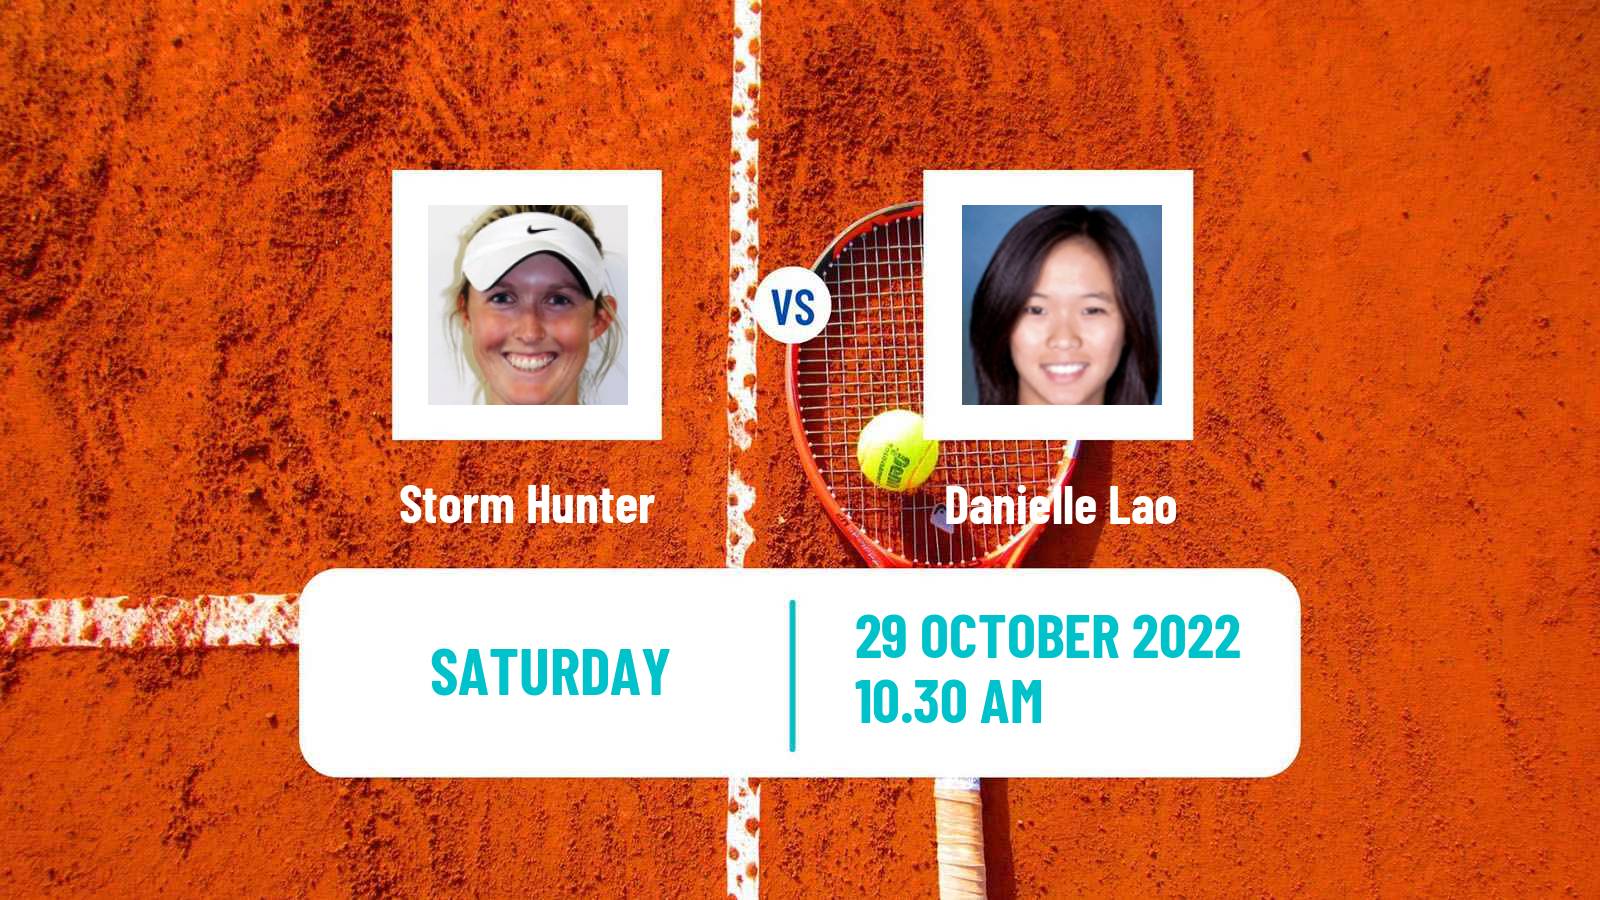 Tennis ITF Tournaments Storm Hunter - Danielle Lao